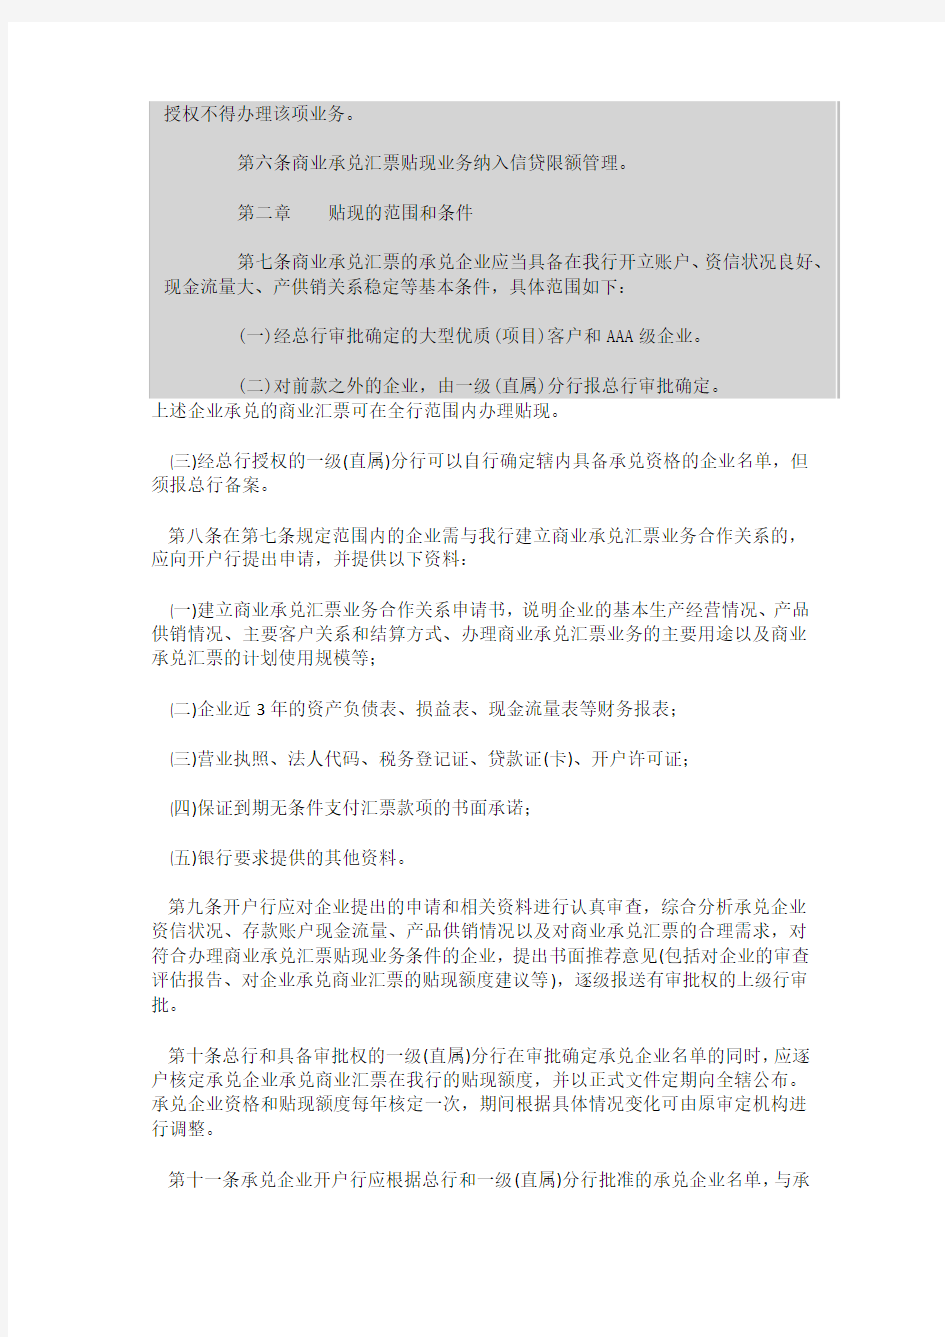 中国工商银行商业承兑汇票贴现业务管理暂行规定